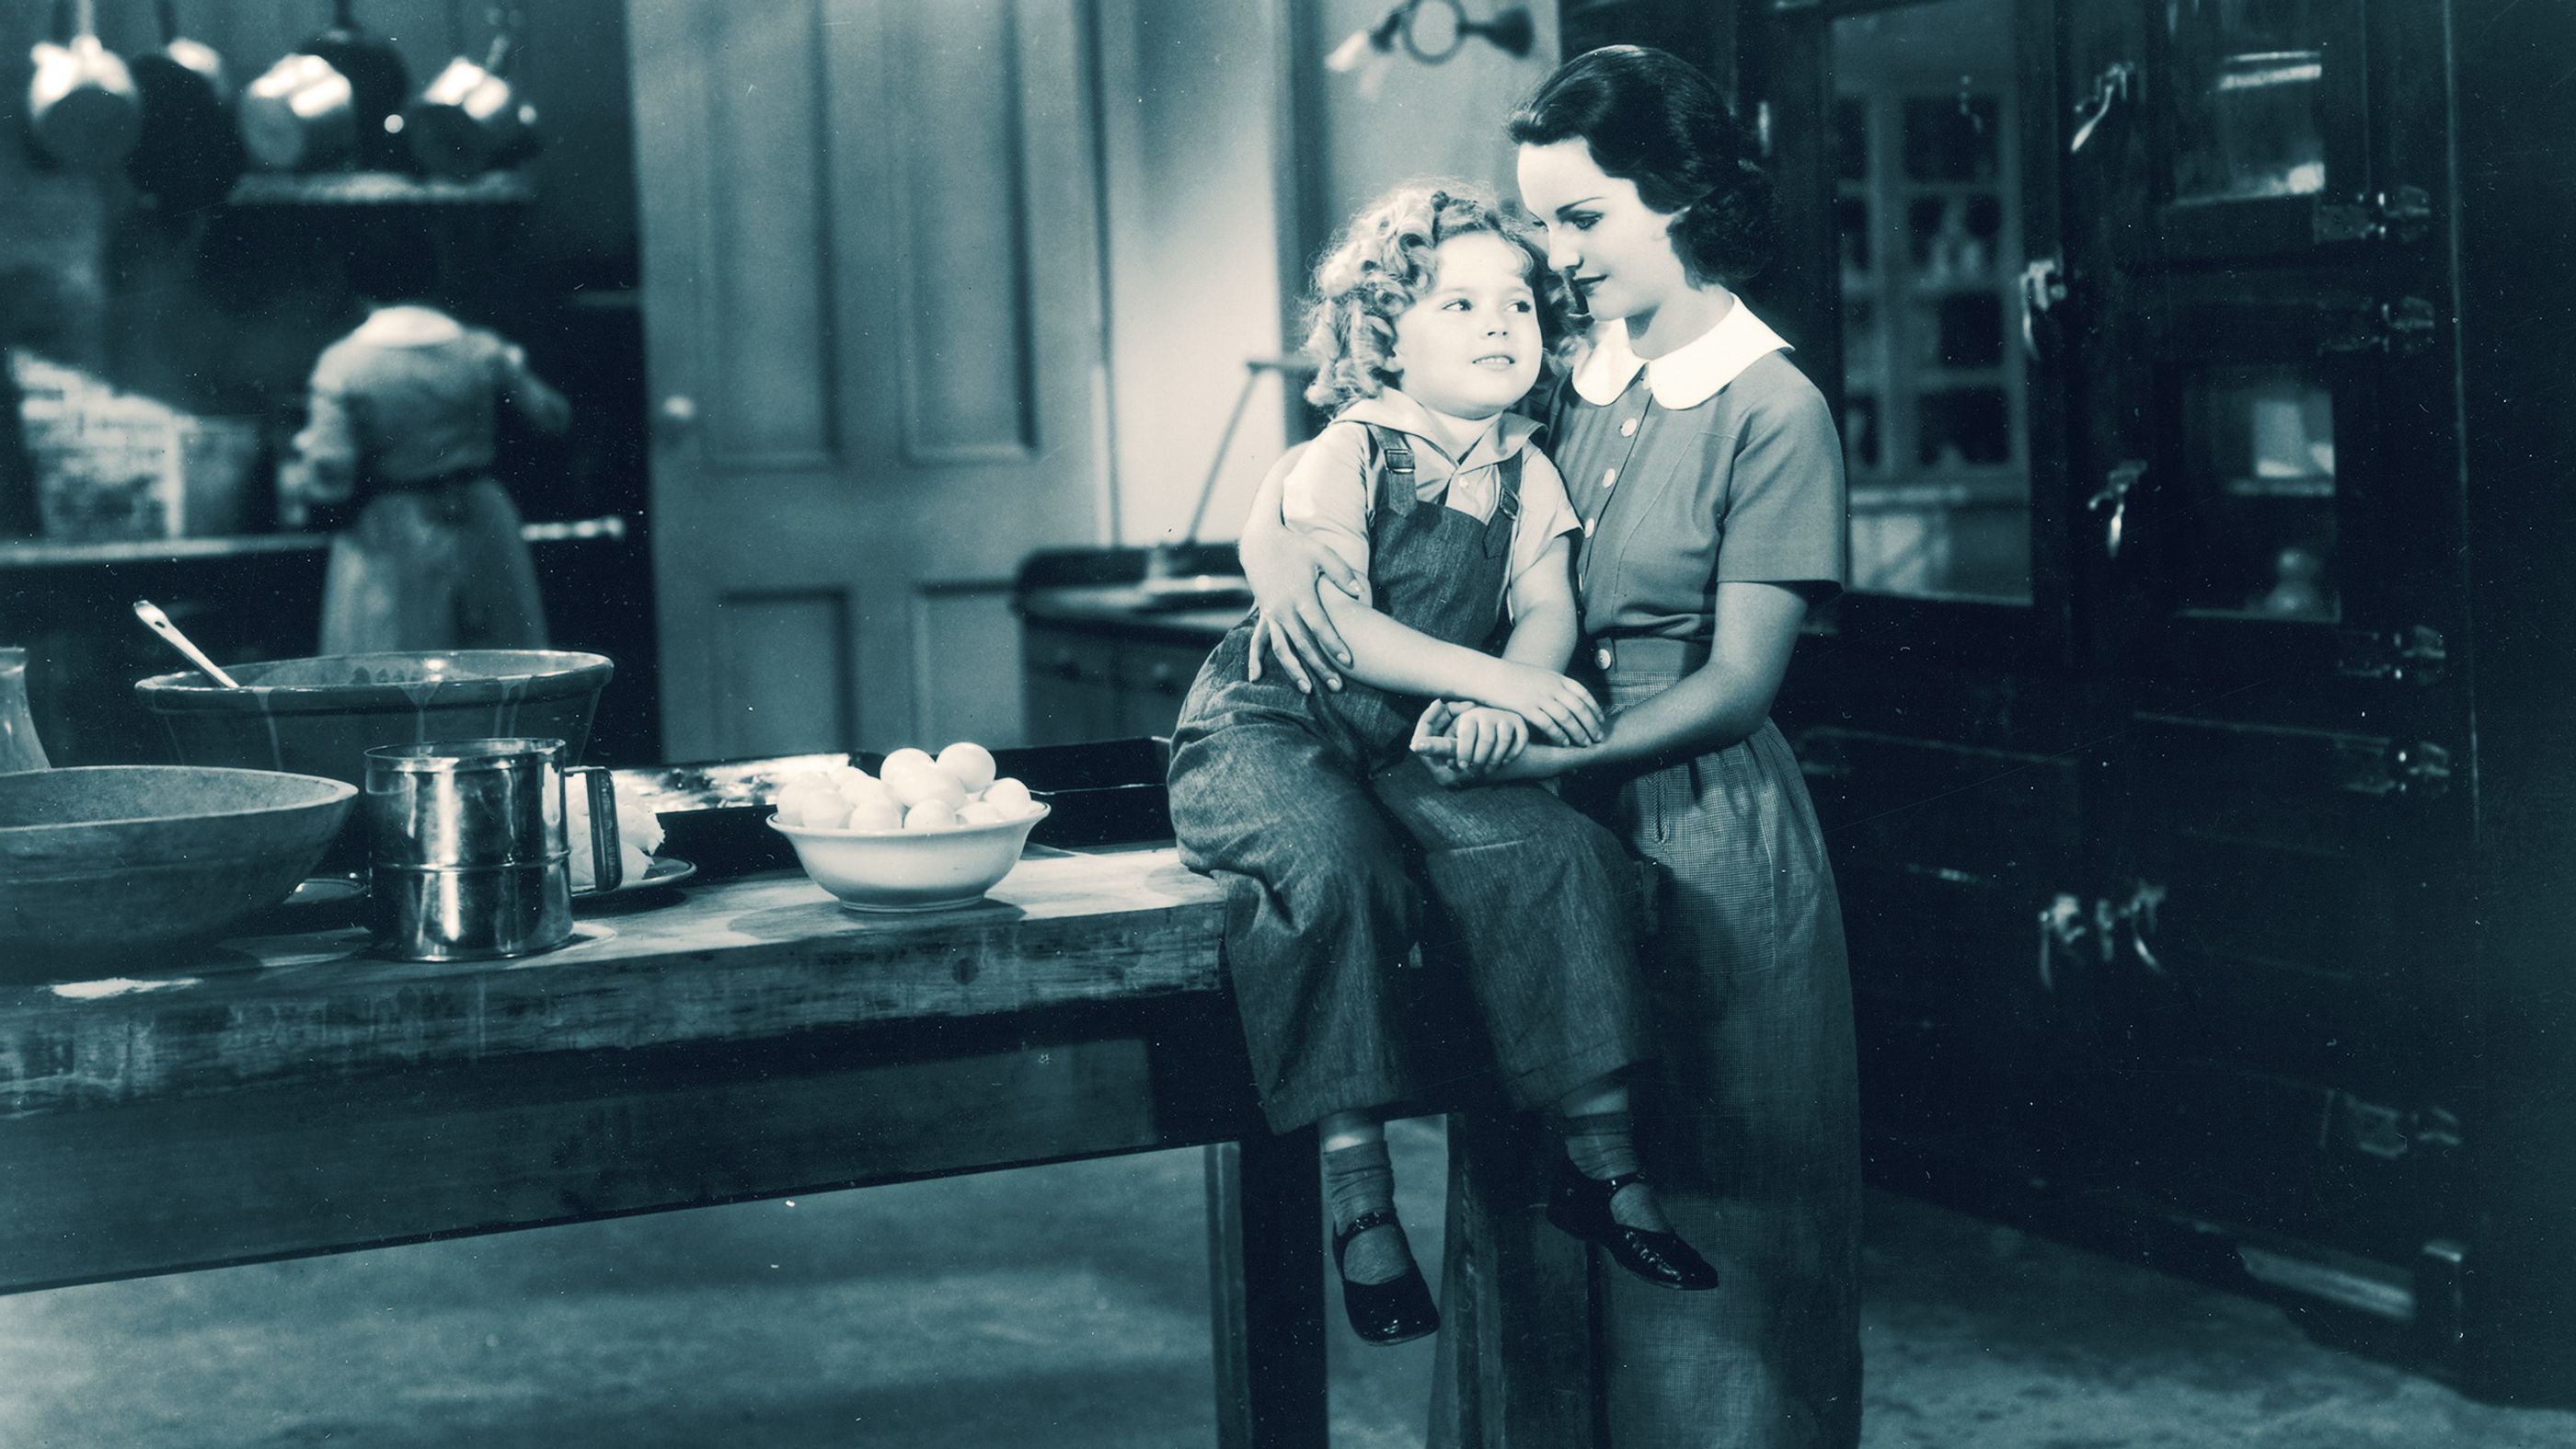 Curly Top (1935) - IMDb